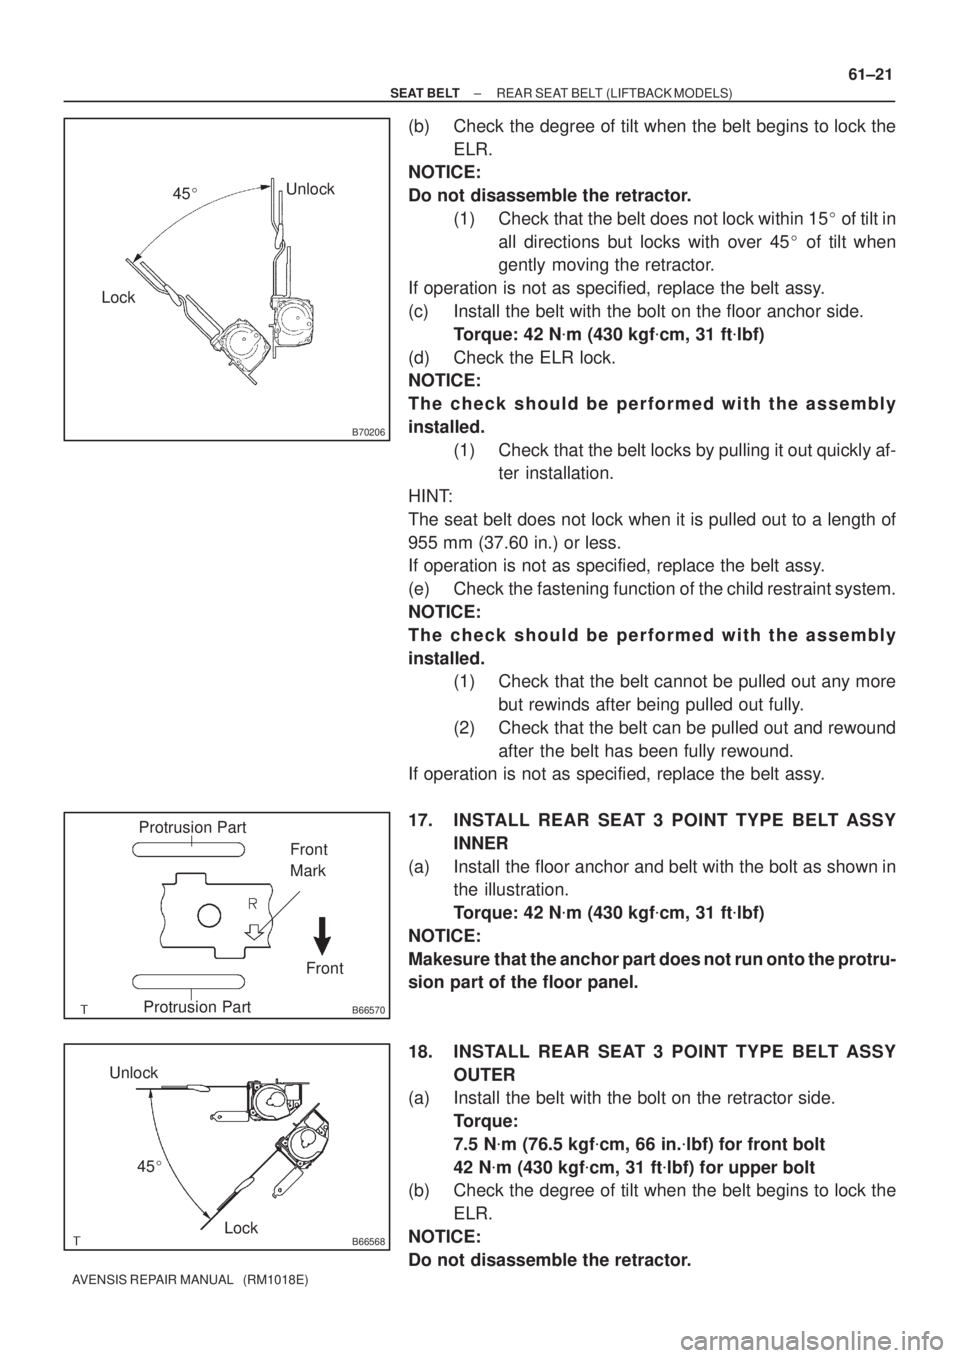 TOYOTA AVENSIS 2005  Service Repair Manual B70206
LockUnlock
45
B66570
Protrusion Part
Front Front
Mark
Protrusion Part
B66568Lock Unlock
45
± SEAT BELTREAR SEAT BELT (LIFTBACK MODELS)
61±21
AVENSIS REPAIR MANUAL   (RM1018E)
(b) Check the 